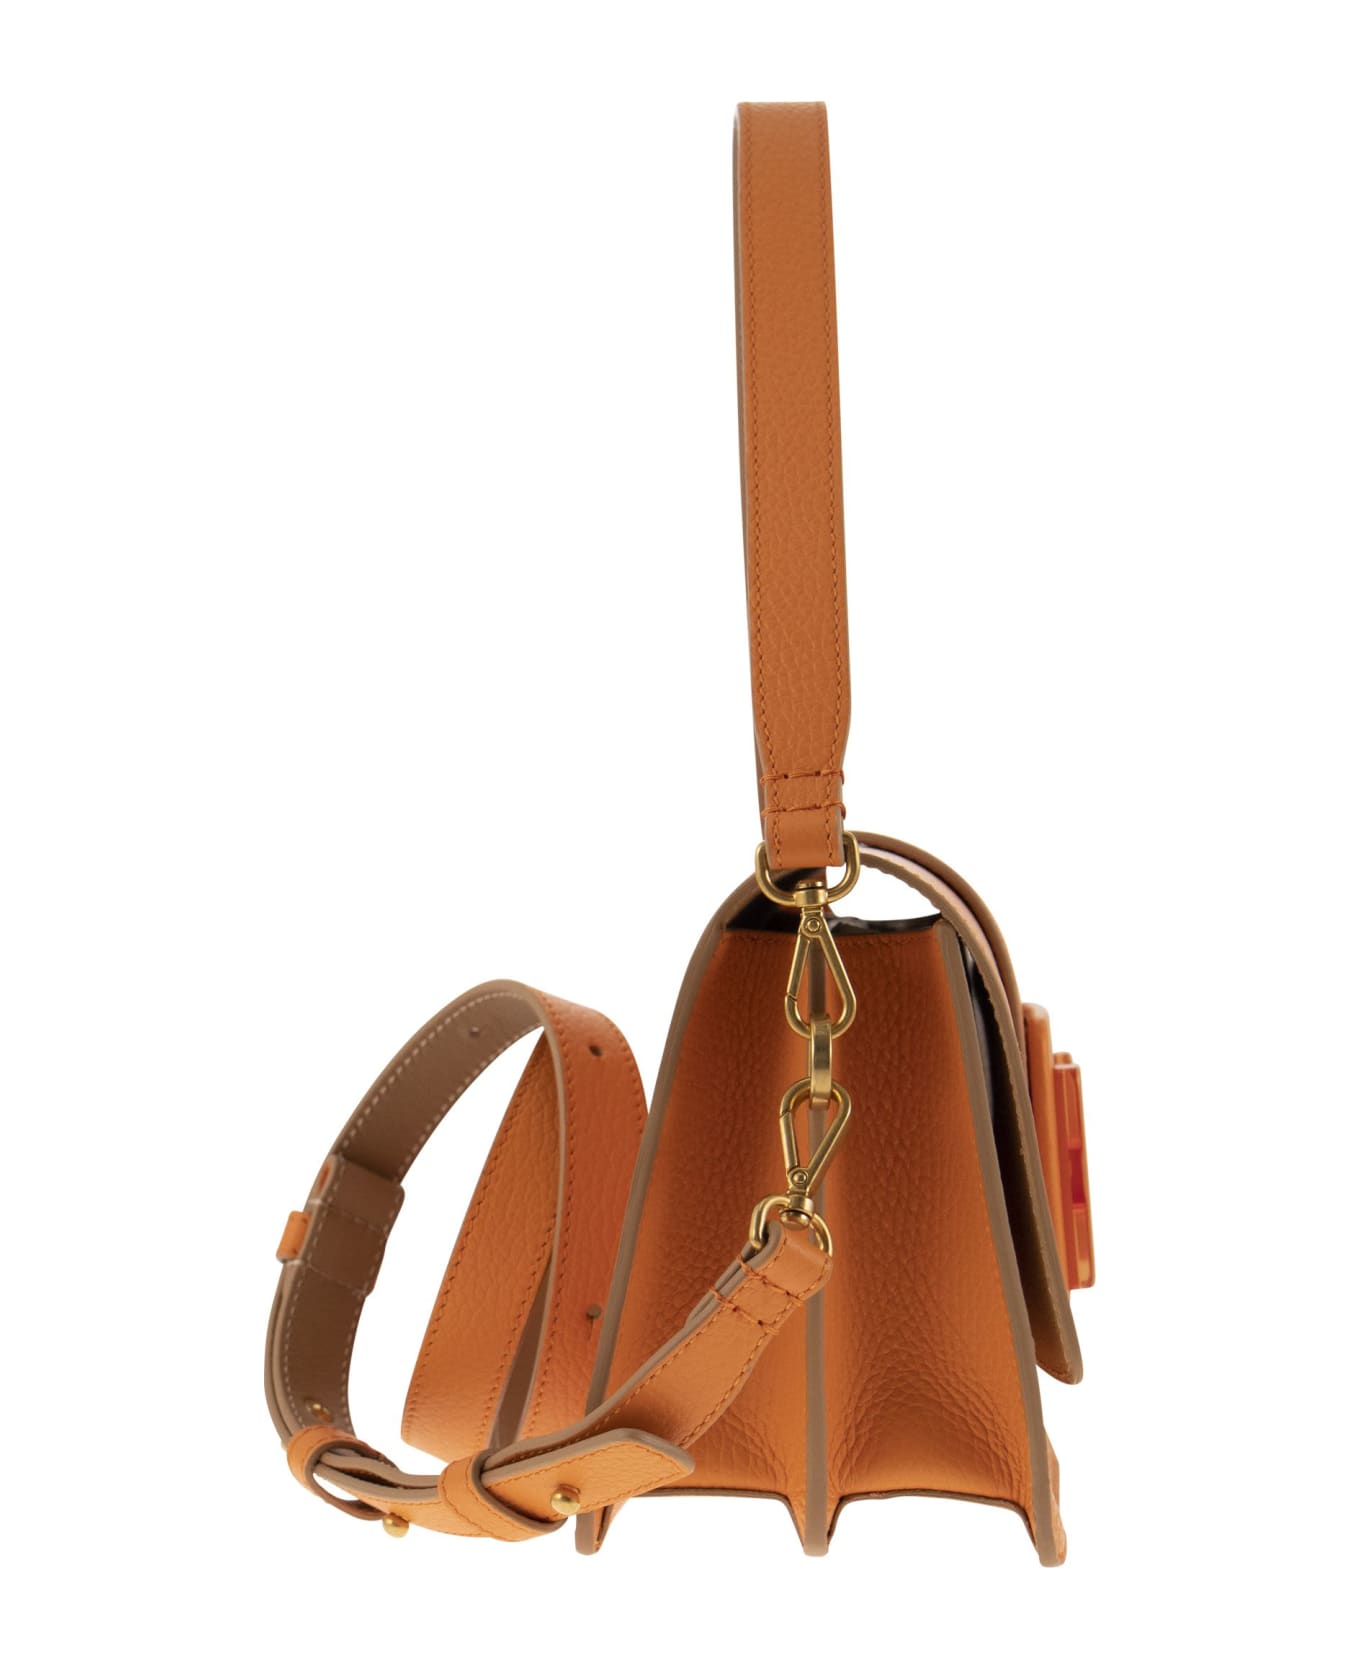 Hogan H-bag Shoulder Bag - Orange